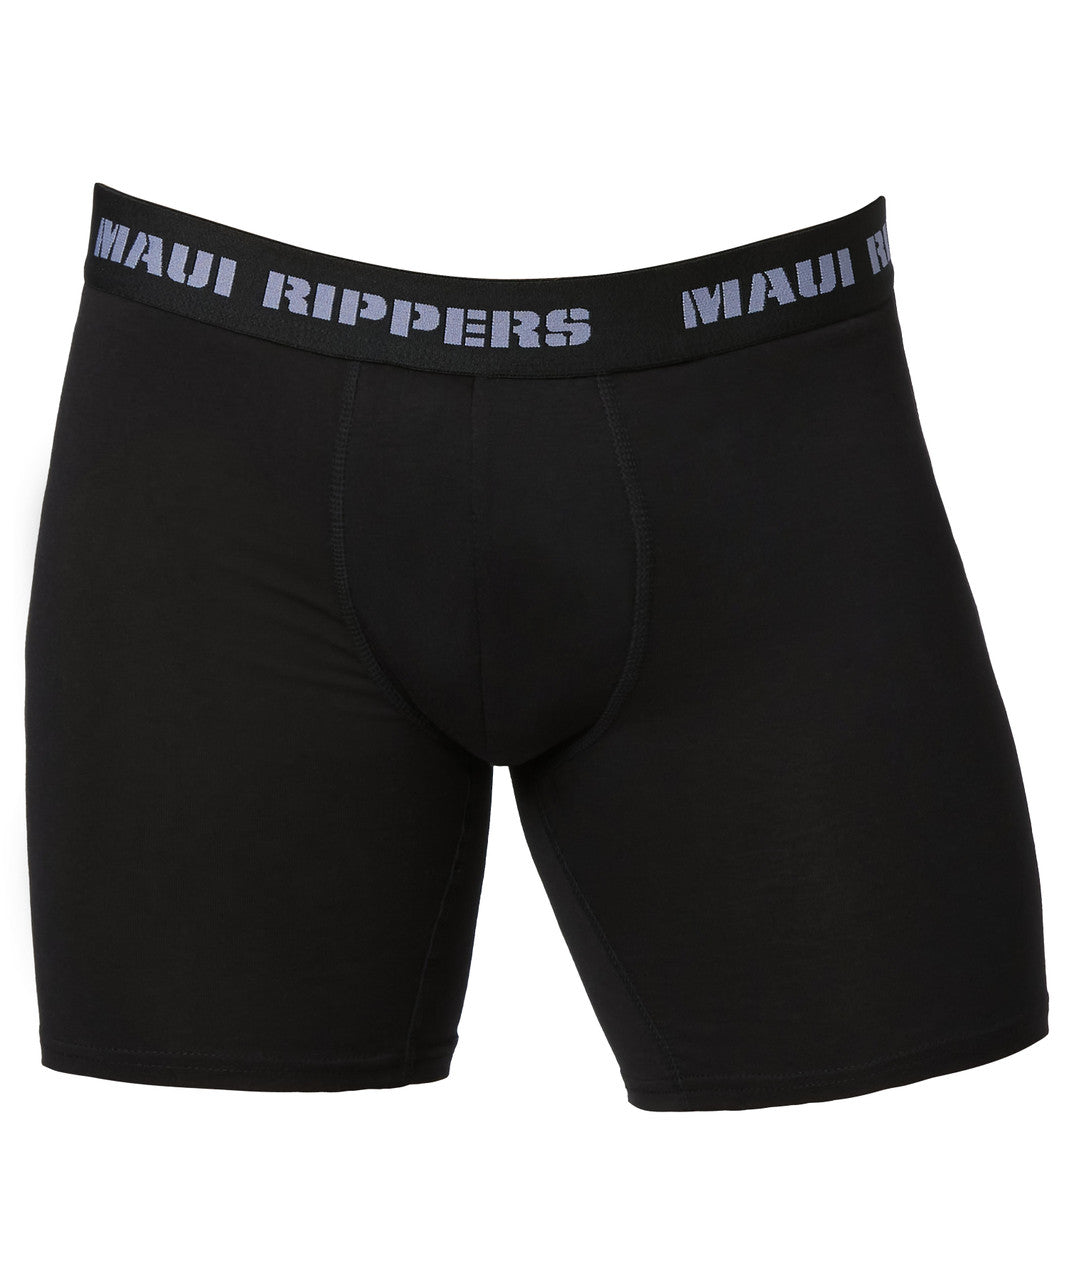 What is Men′s Boxer Briefs Cotton Regular Long Mens Briefs Underwear